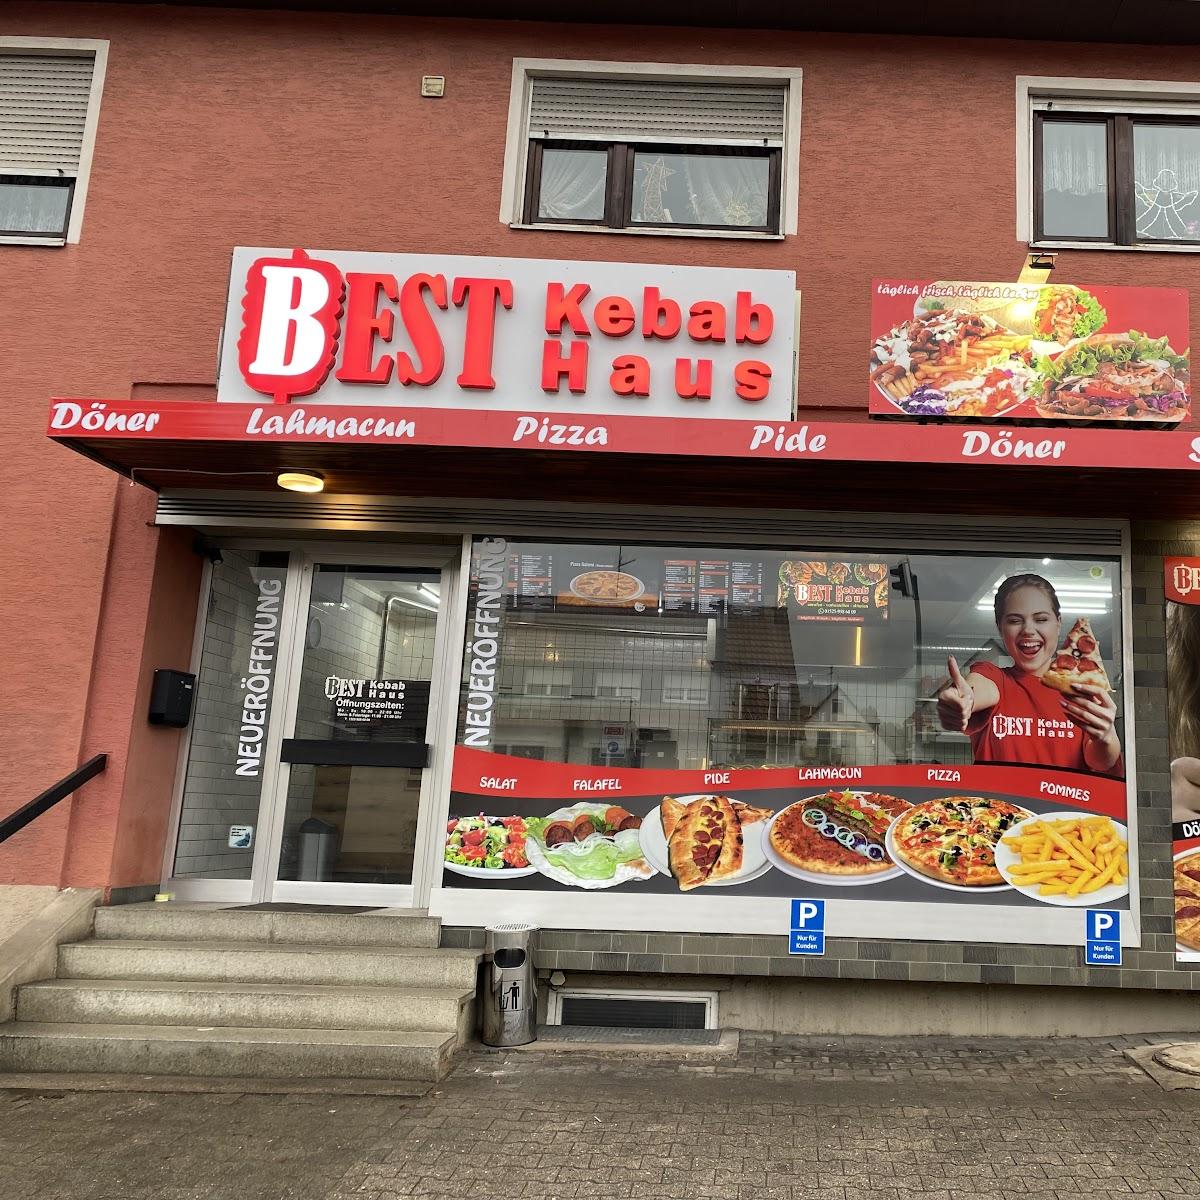 Restaurant "Best Kebab Haus" in Weinstadt